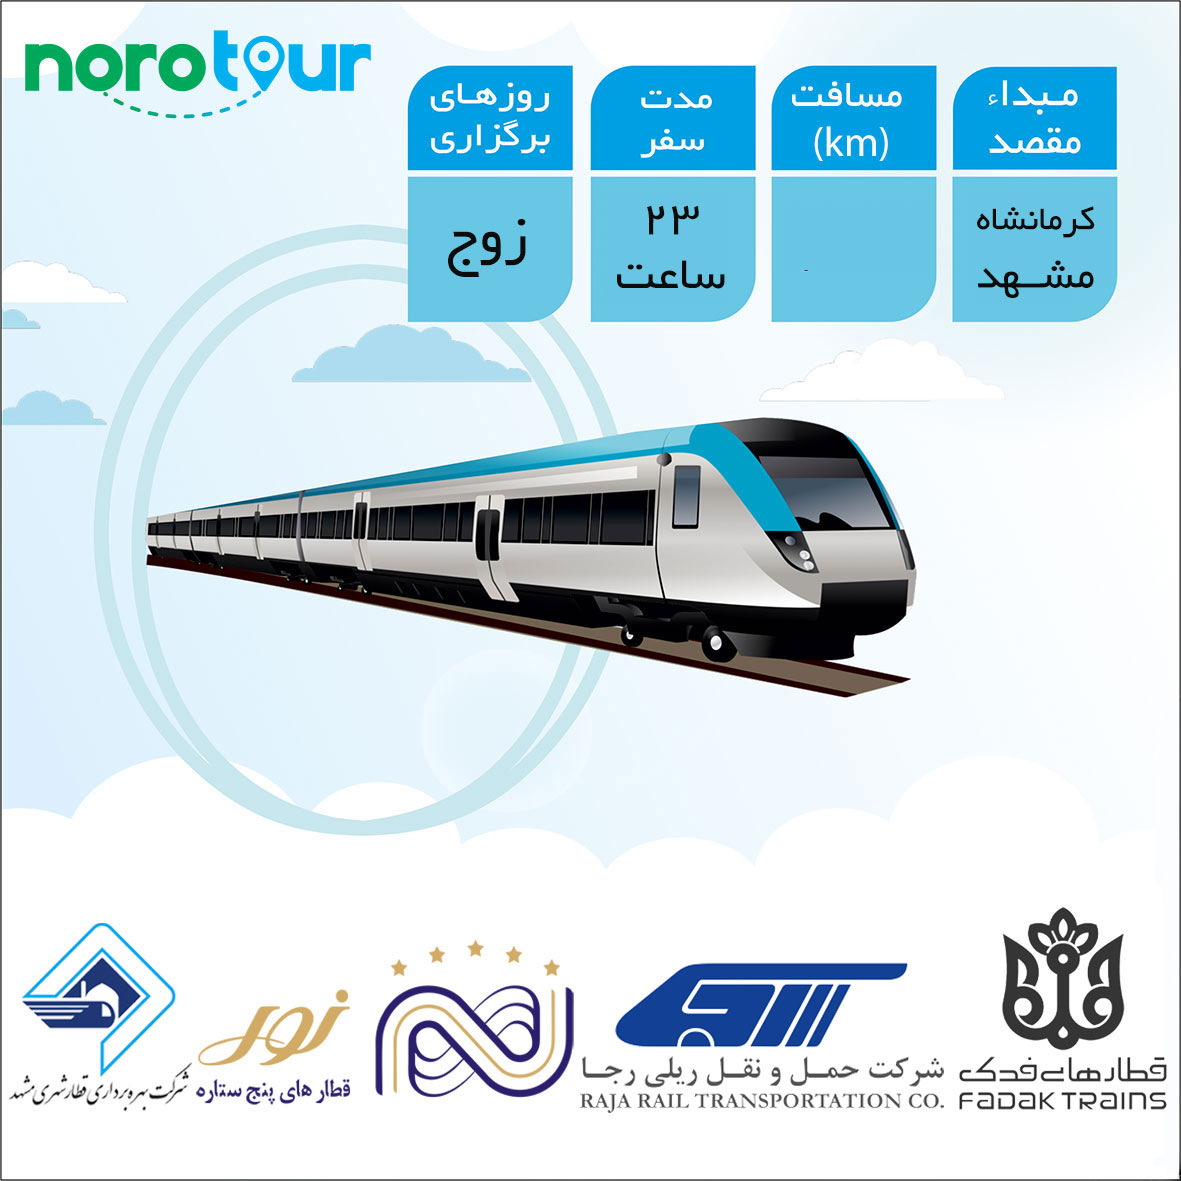 تور مشهد از کرمانشاه با قطار | نورو تور